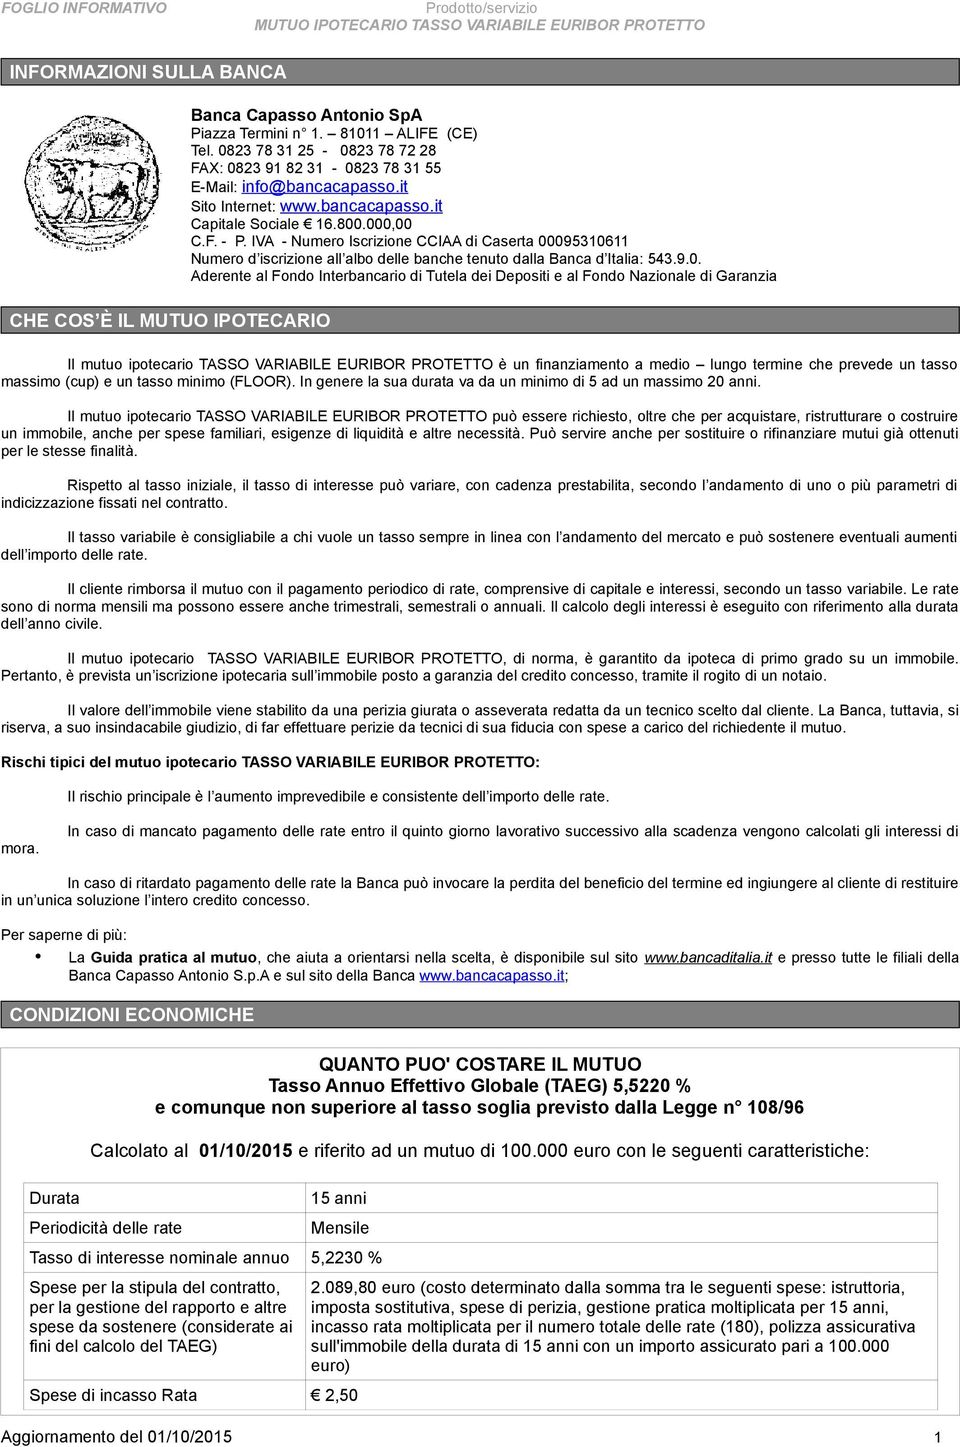 IVA - Numero Iscrizione CCIAA di Caserta 00